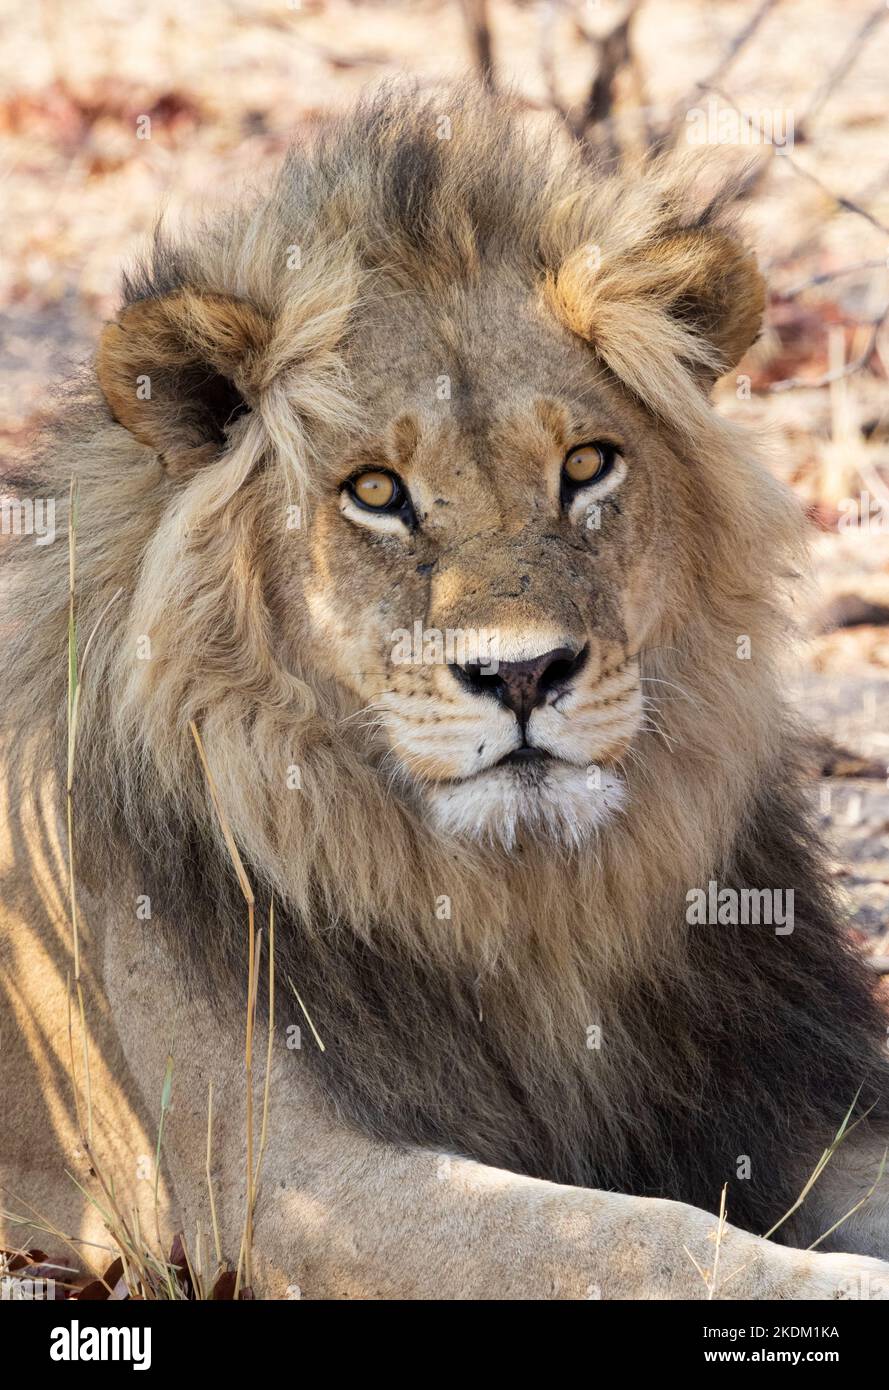 Adulte Homme lion, Panthera leo, regardant la caméra, gros plan portrait de la tête, Moremi Game Reserve, Okavango Delta, Botswana Afrique Banque D'Images